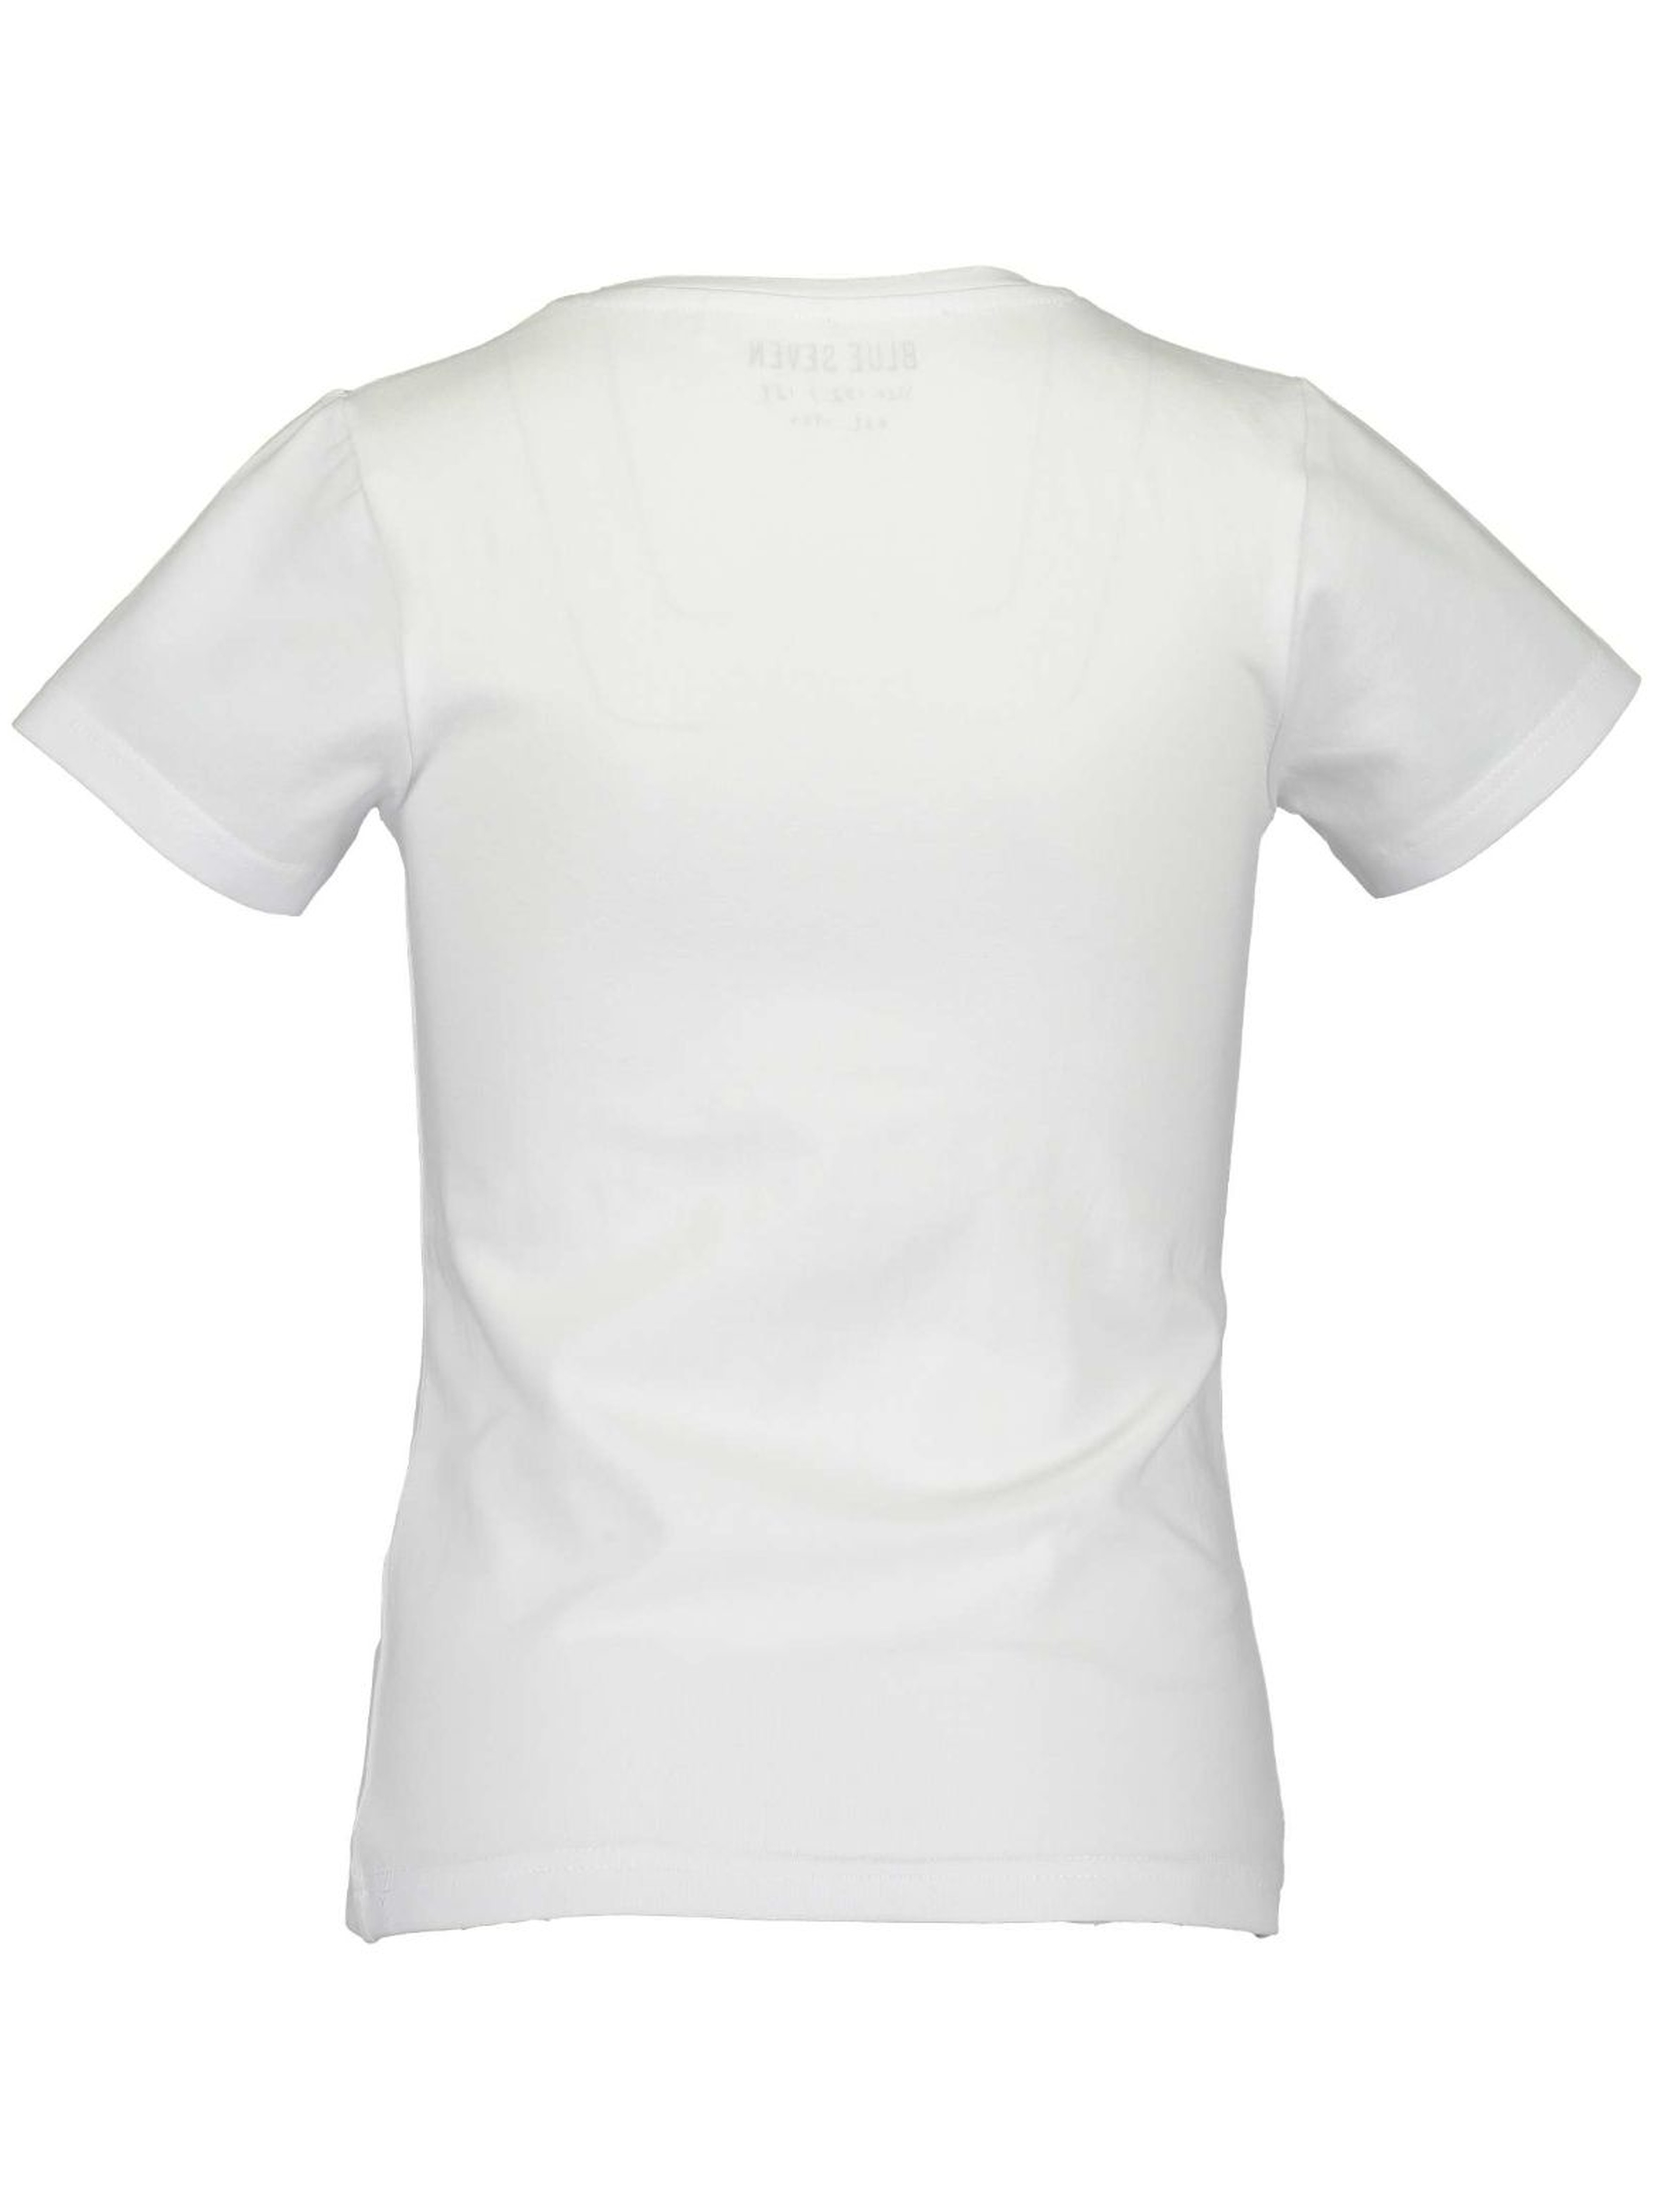 T-Shirt dziewczęcy biały z błyskawicą